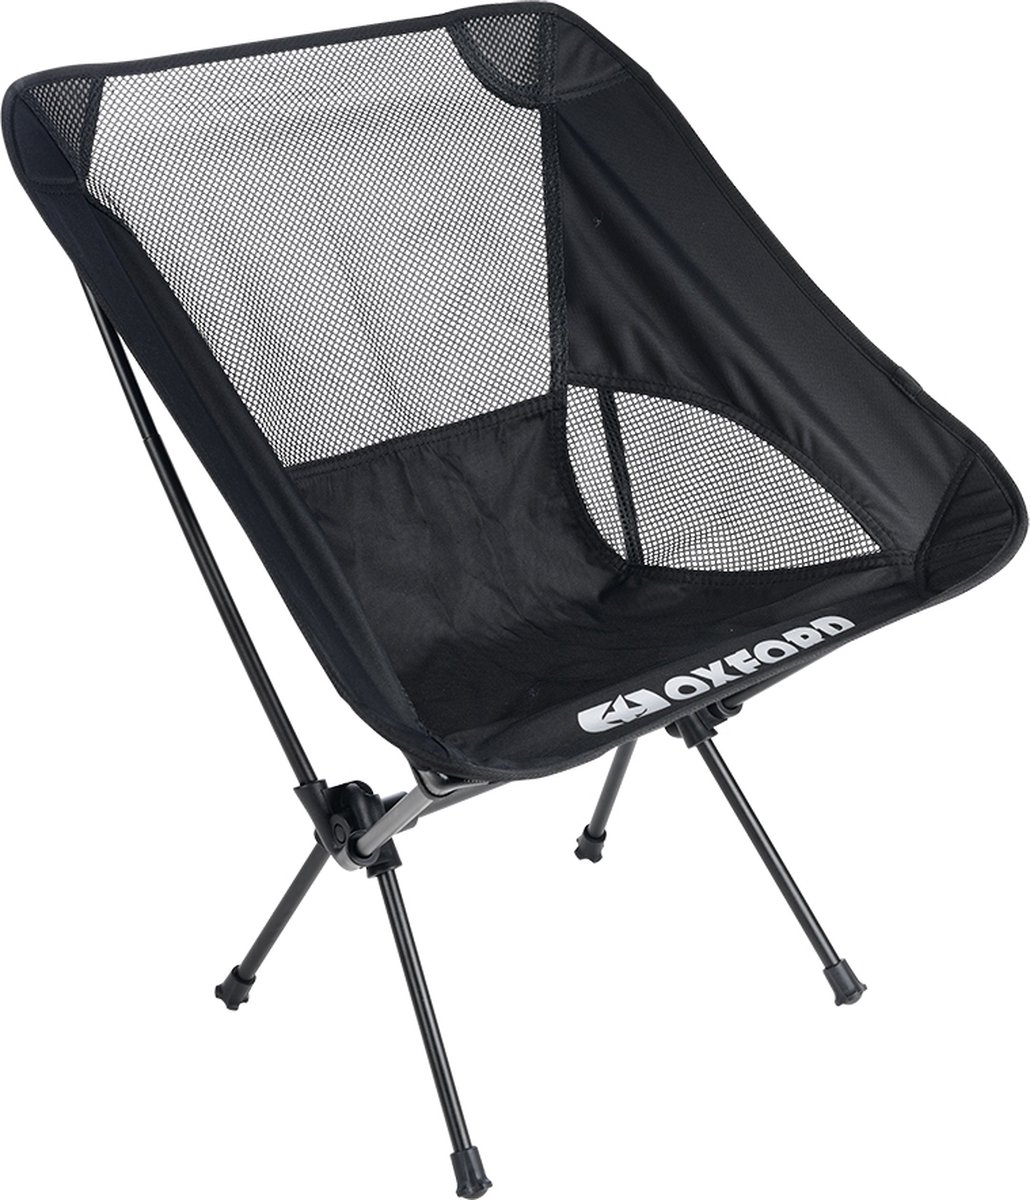 Kampeerstoel - Campingstoel lichtgewicht - Opvouwbare campingstoel met draagtas - Compacte campingstoel - Aluminium kampeerstoel - Visstoel